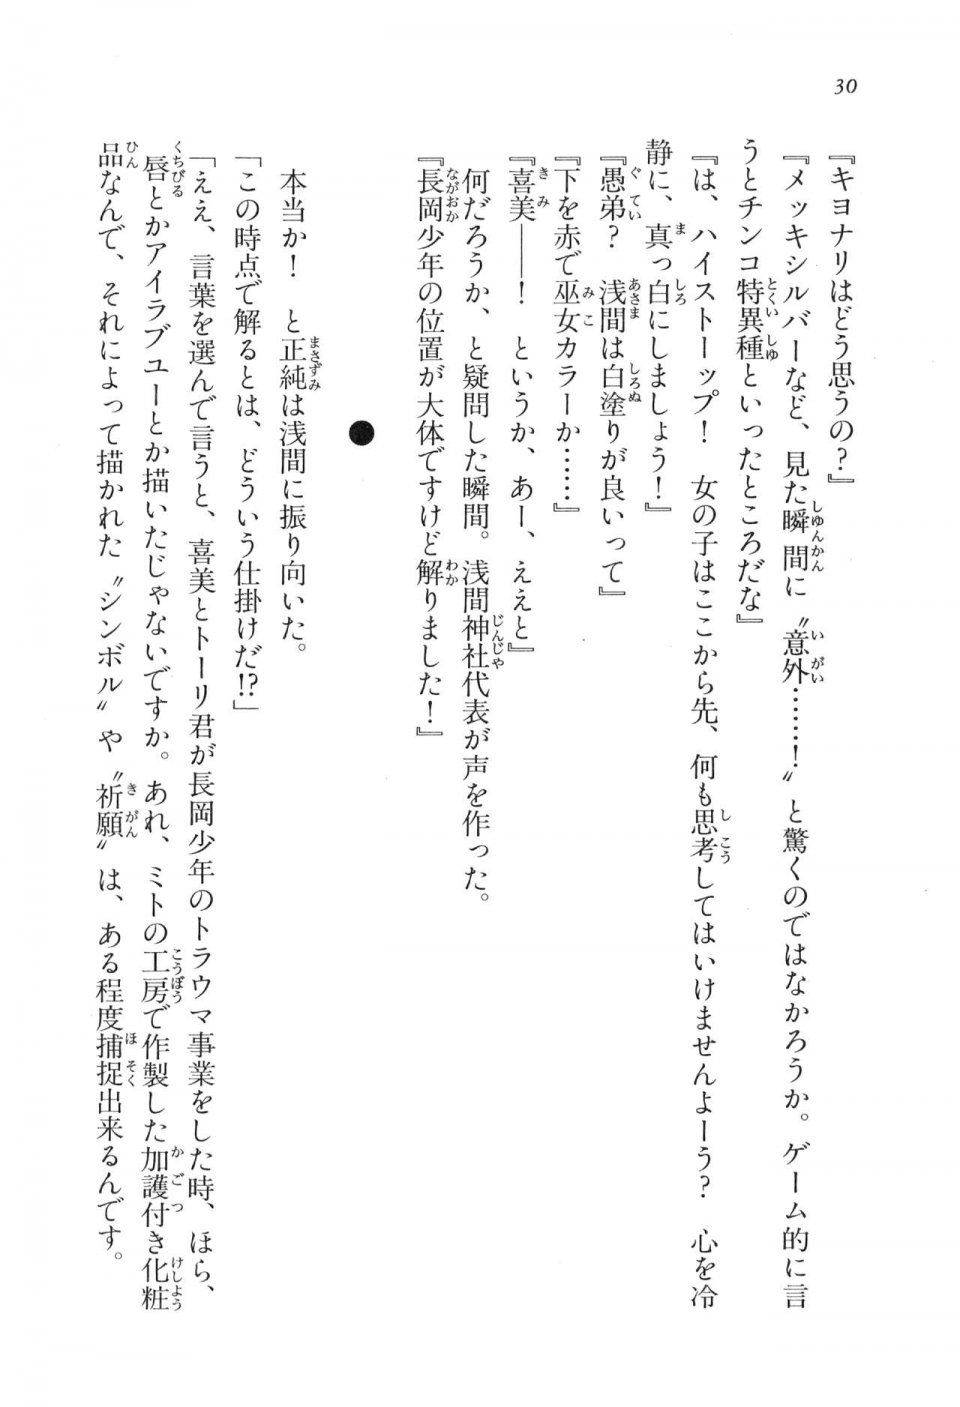 Kyoukai Senjou no Horizon LN Vol 17(7B) - Photo #30